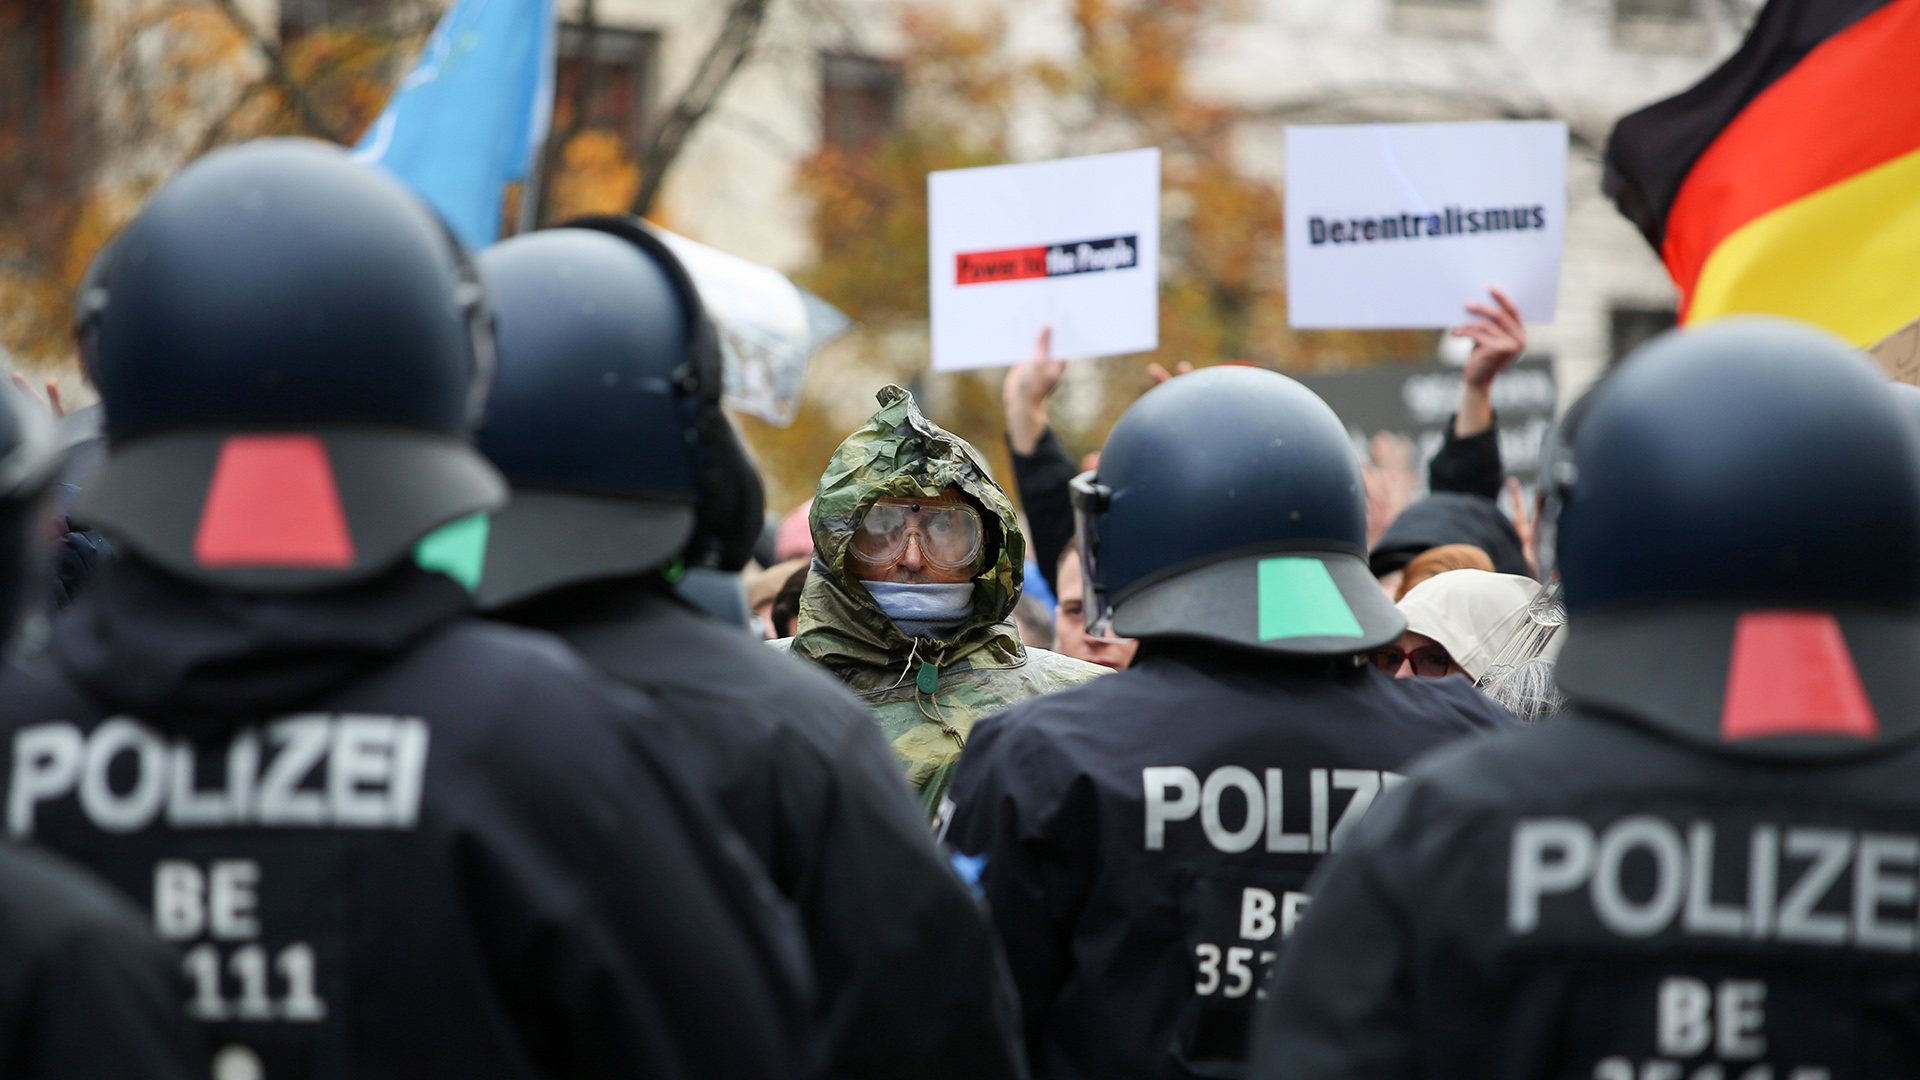 Polizisten stehen vor Demonstranten die gegen die Coronauflagen der Bundesregierung demonstrieren, Berlin. | Bildquelle: REUTERS